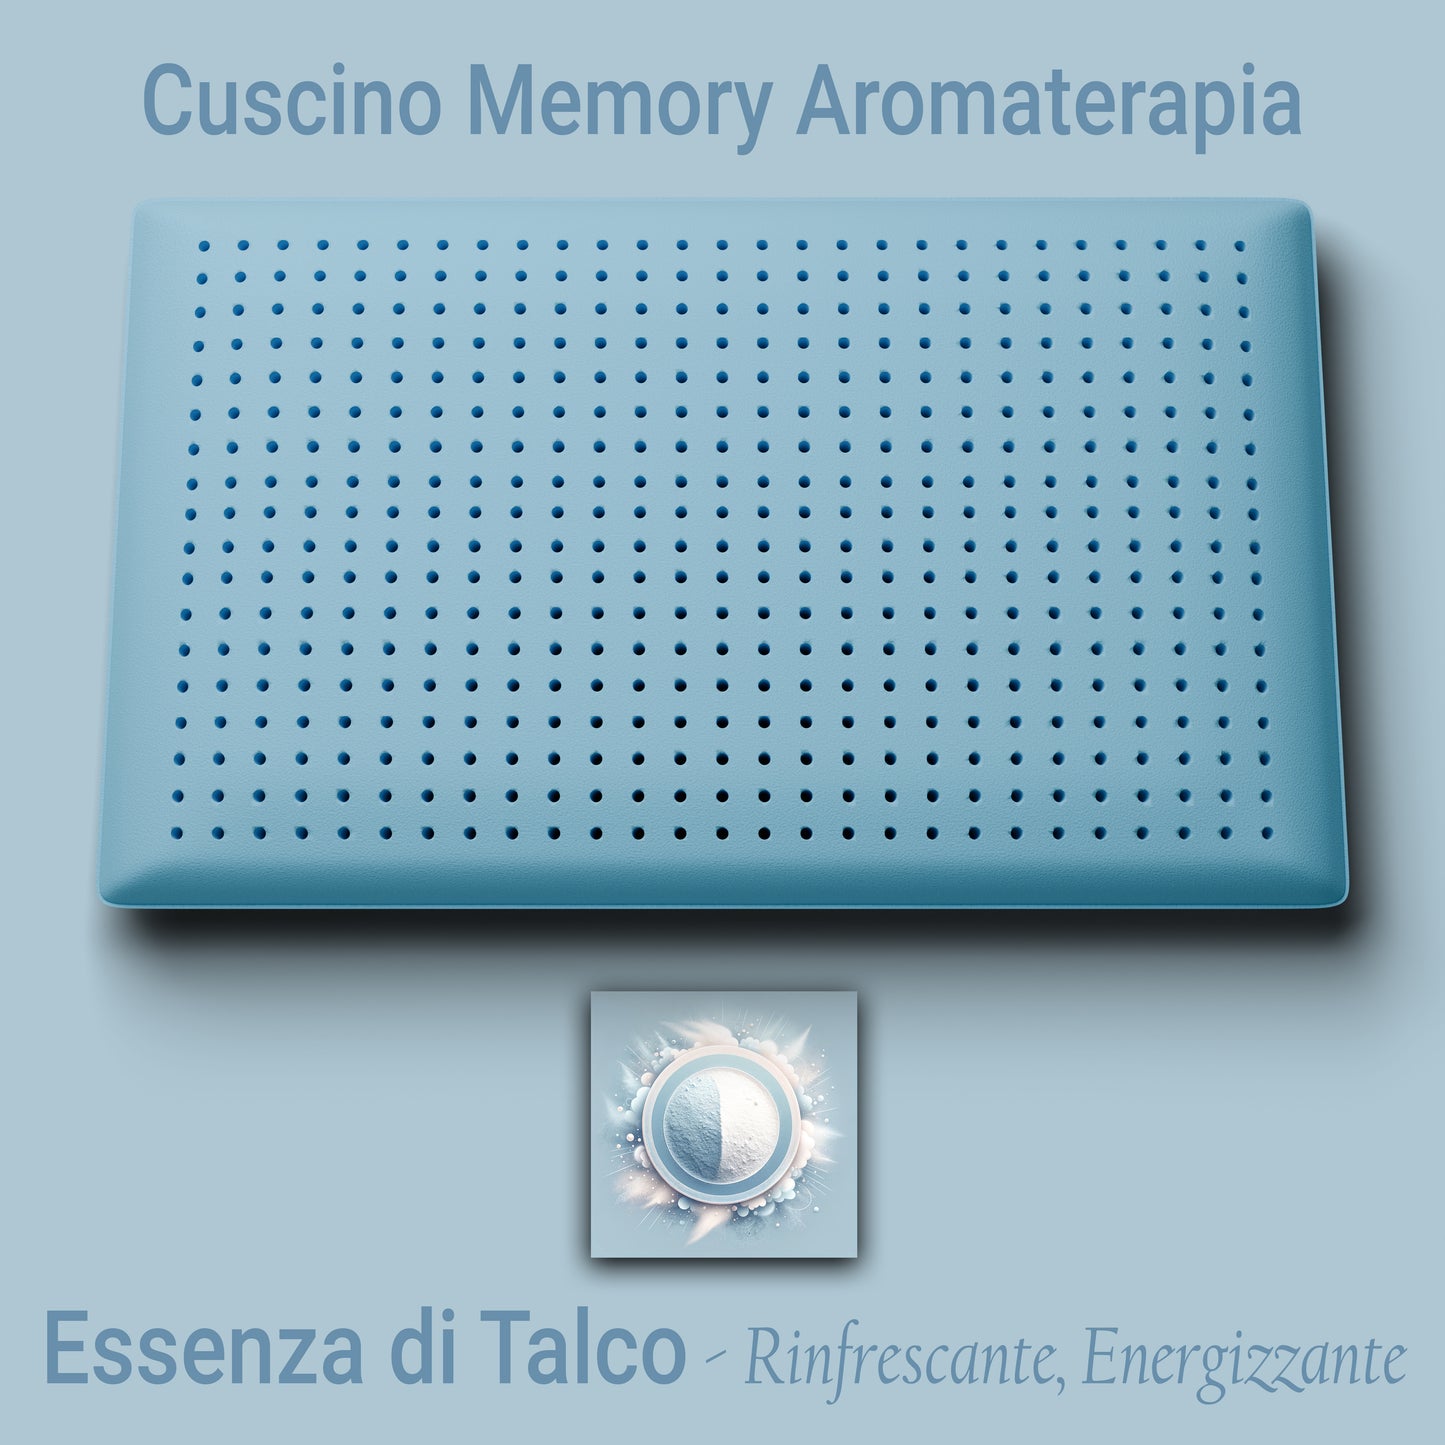 Cuscino Memory Aromaterapia, Cuscino per la Cervicale, Cuscino Profumo Talco